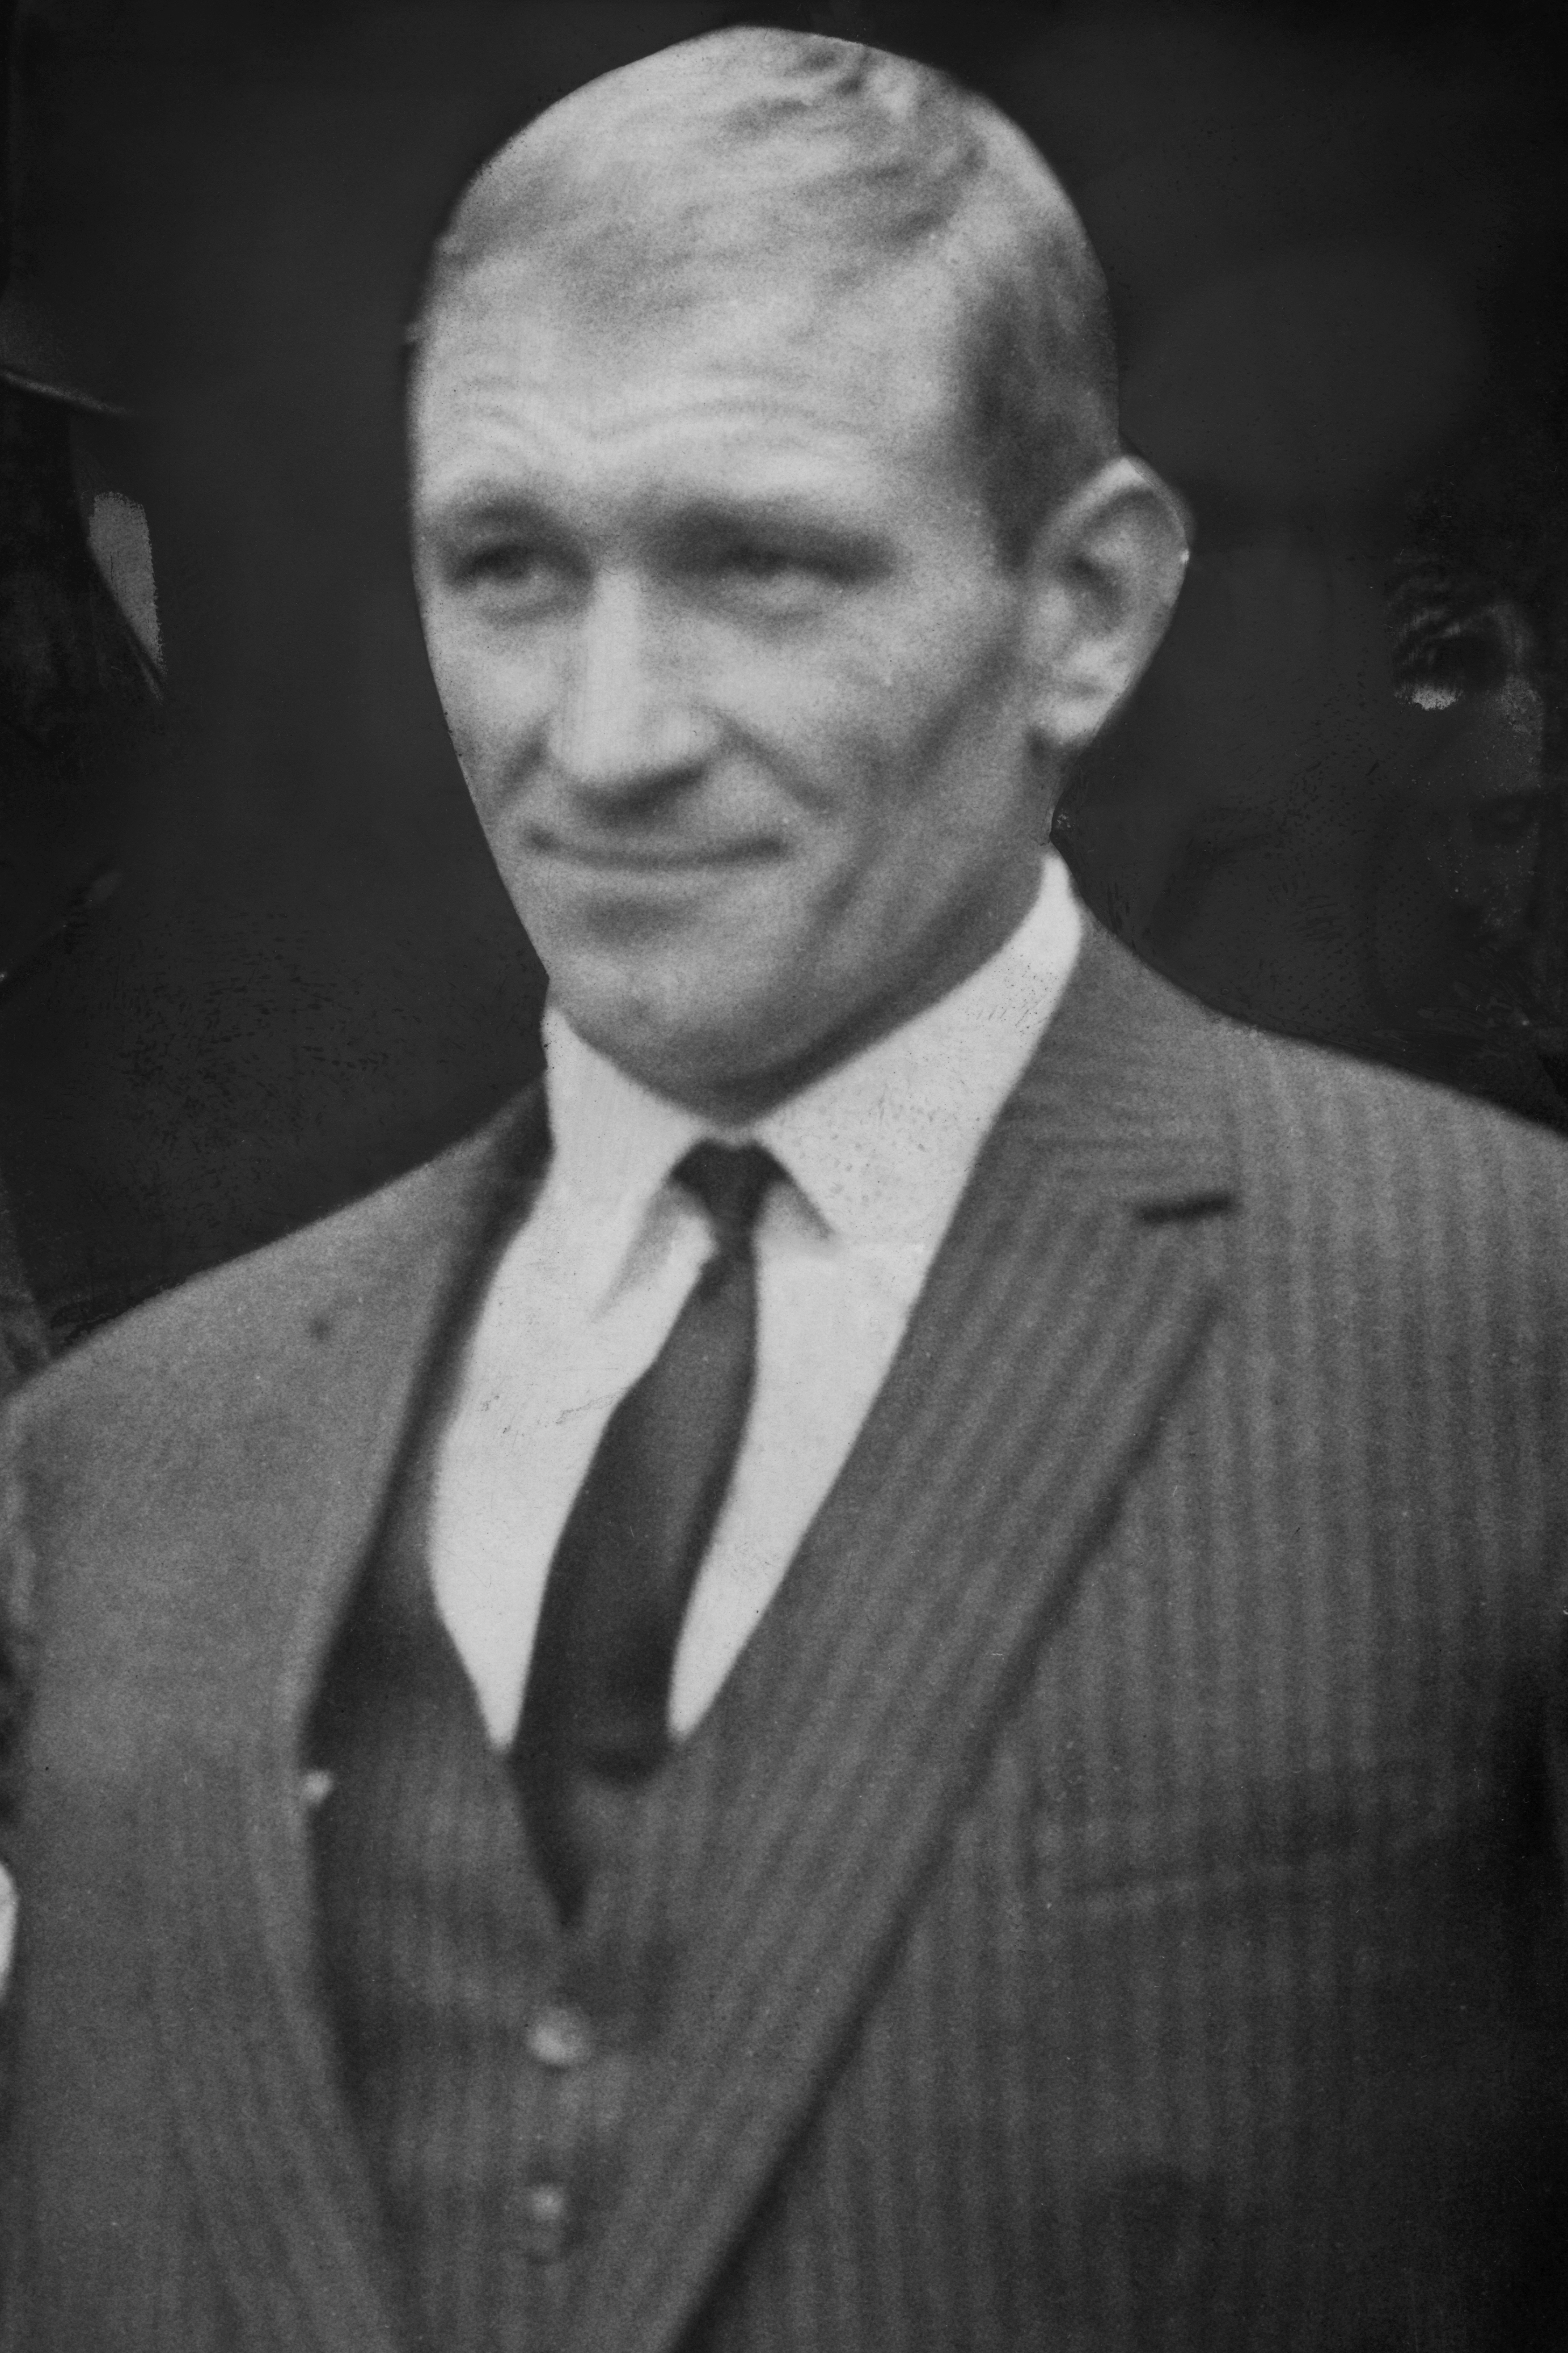 Gordon Goody war einer der an dem Überfall beteiligten Räuber und wurde später angeklagt und inhaftiert